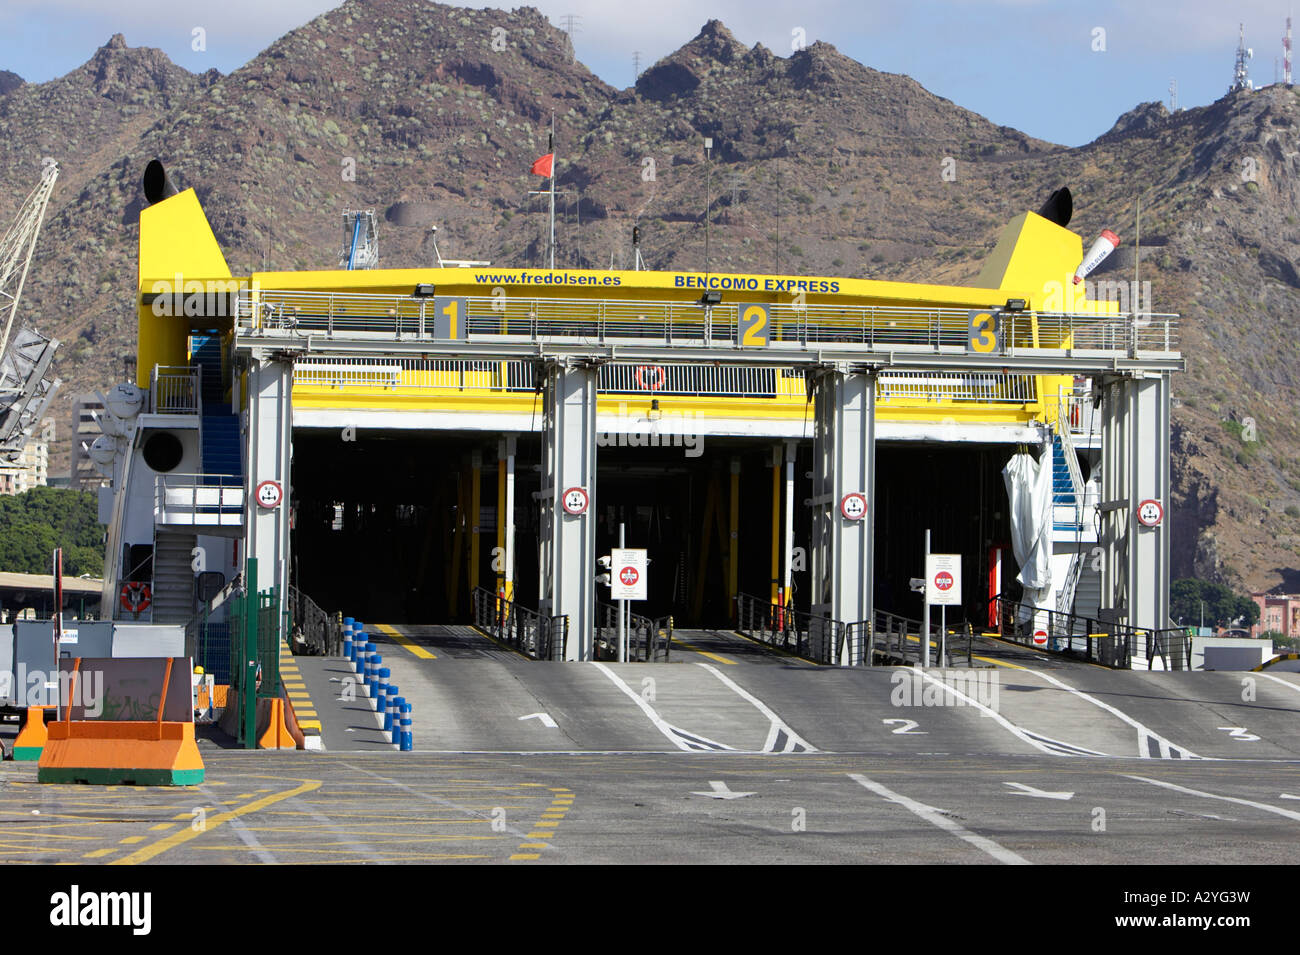 Rückansicht und Eingang auf dem Autodeck Autotyp Bencomo Express Fred Olsen Fähre sitzen in Puerto de Tenerife Stockfoto